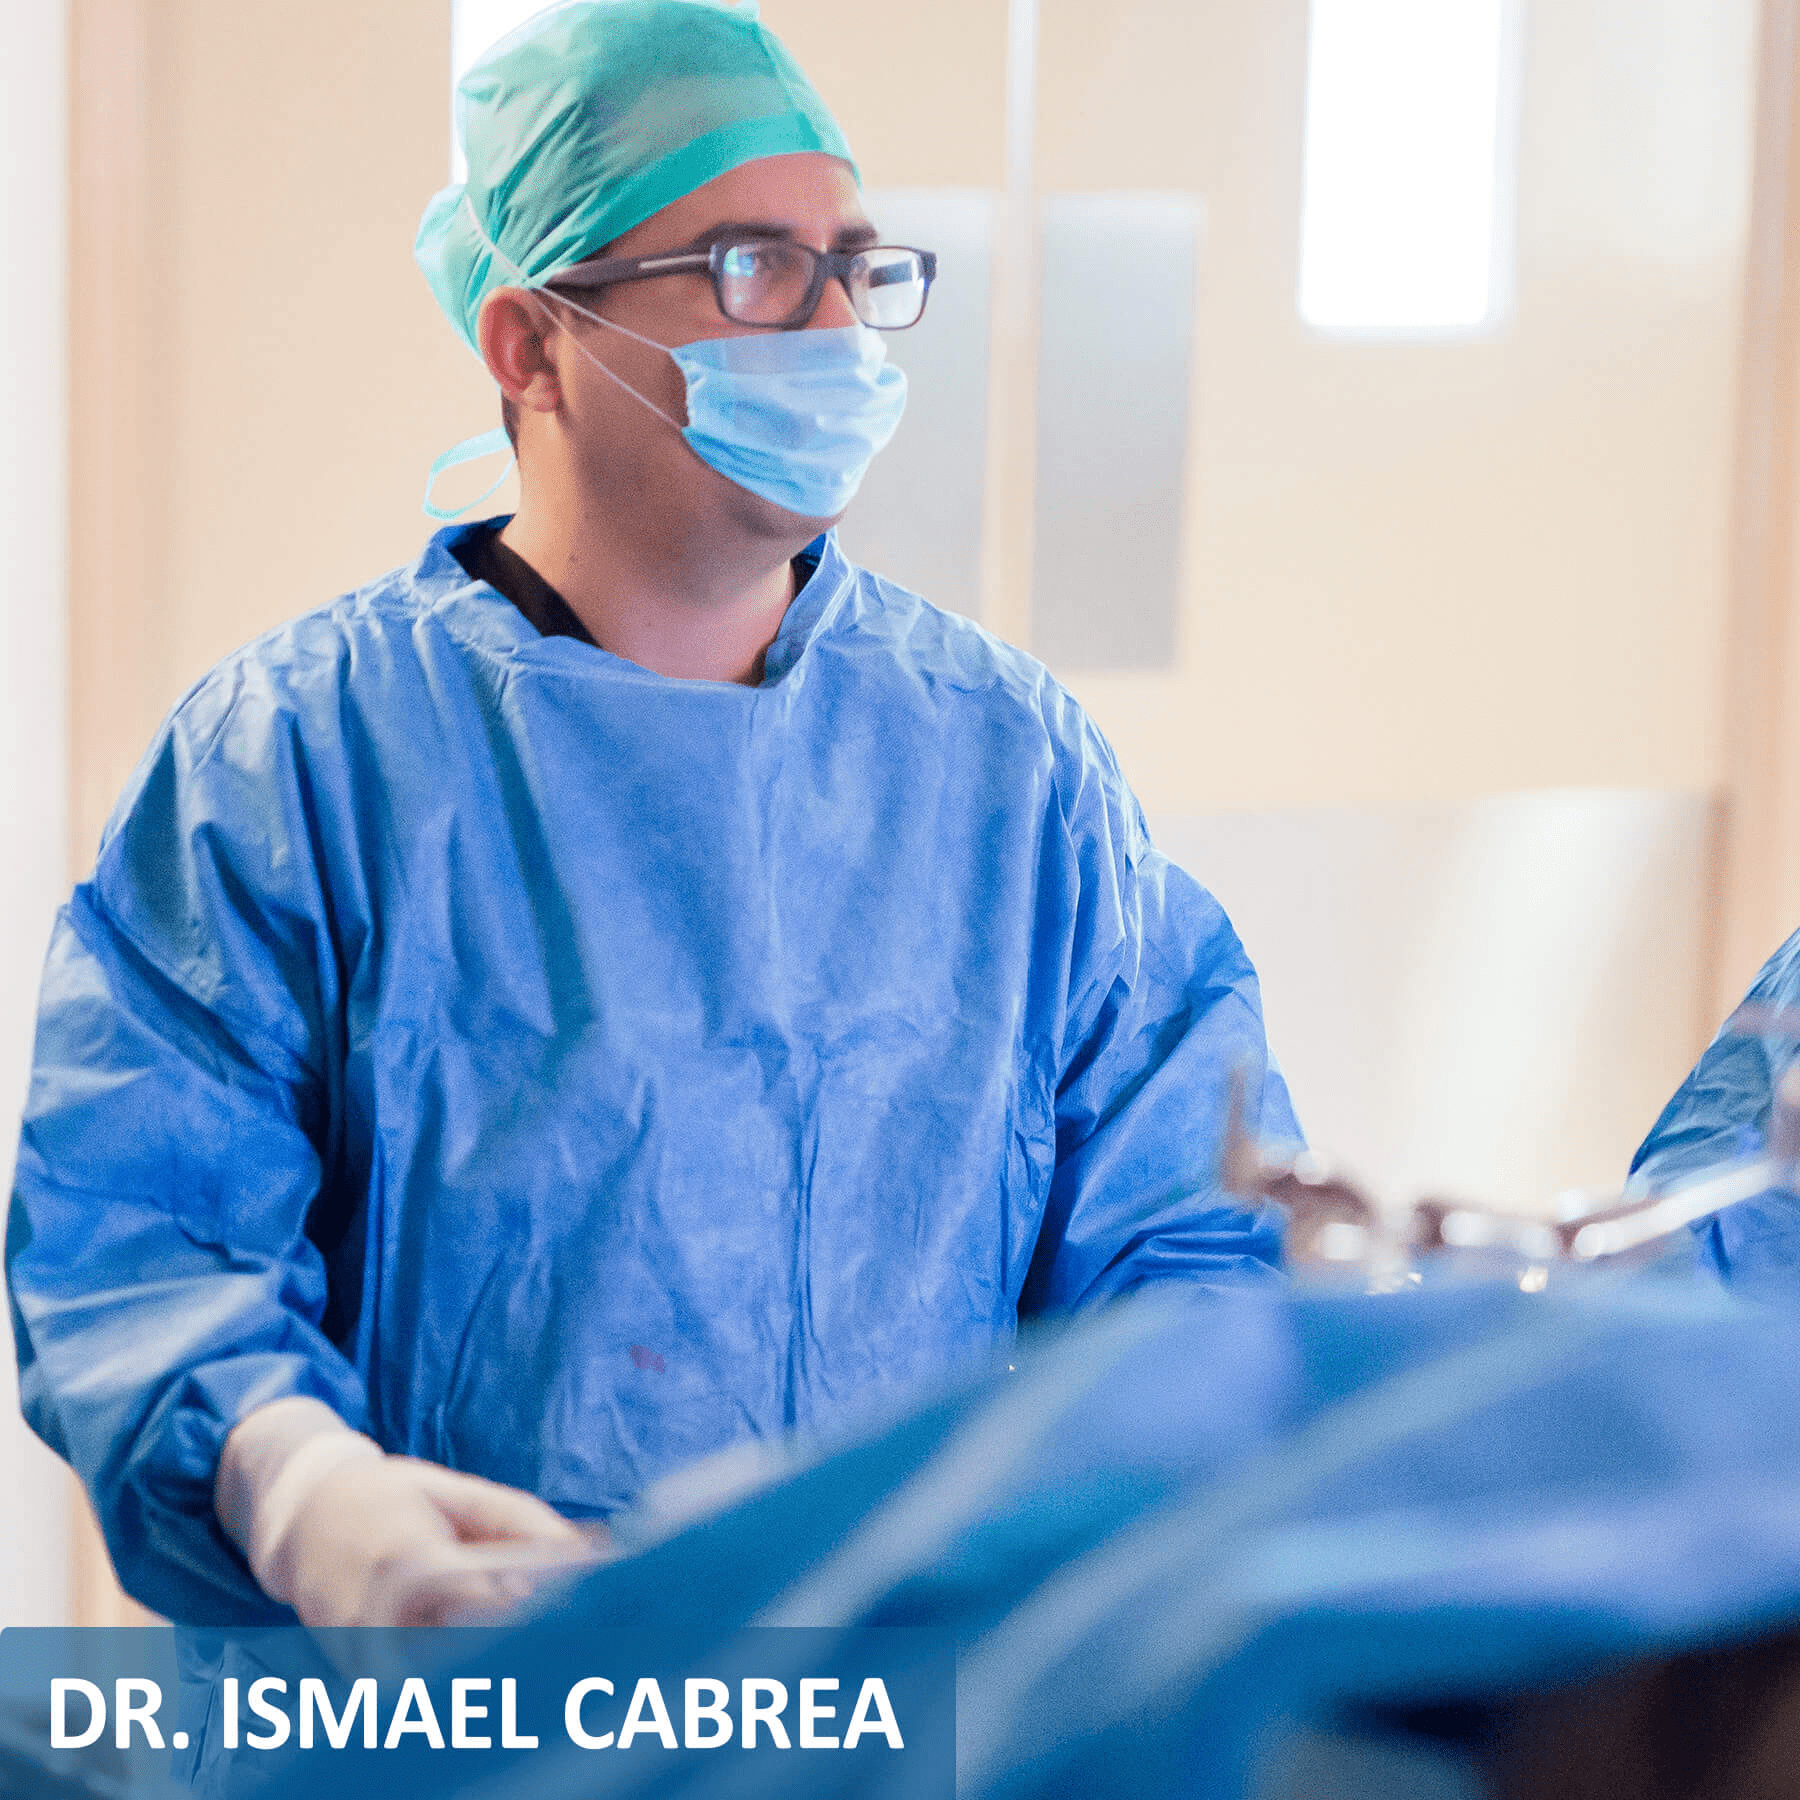 Dr. Ismael Cabrera